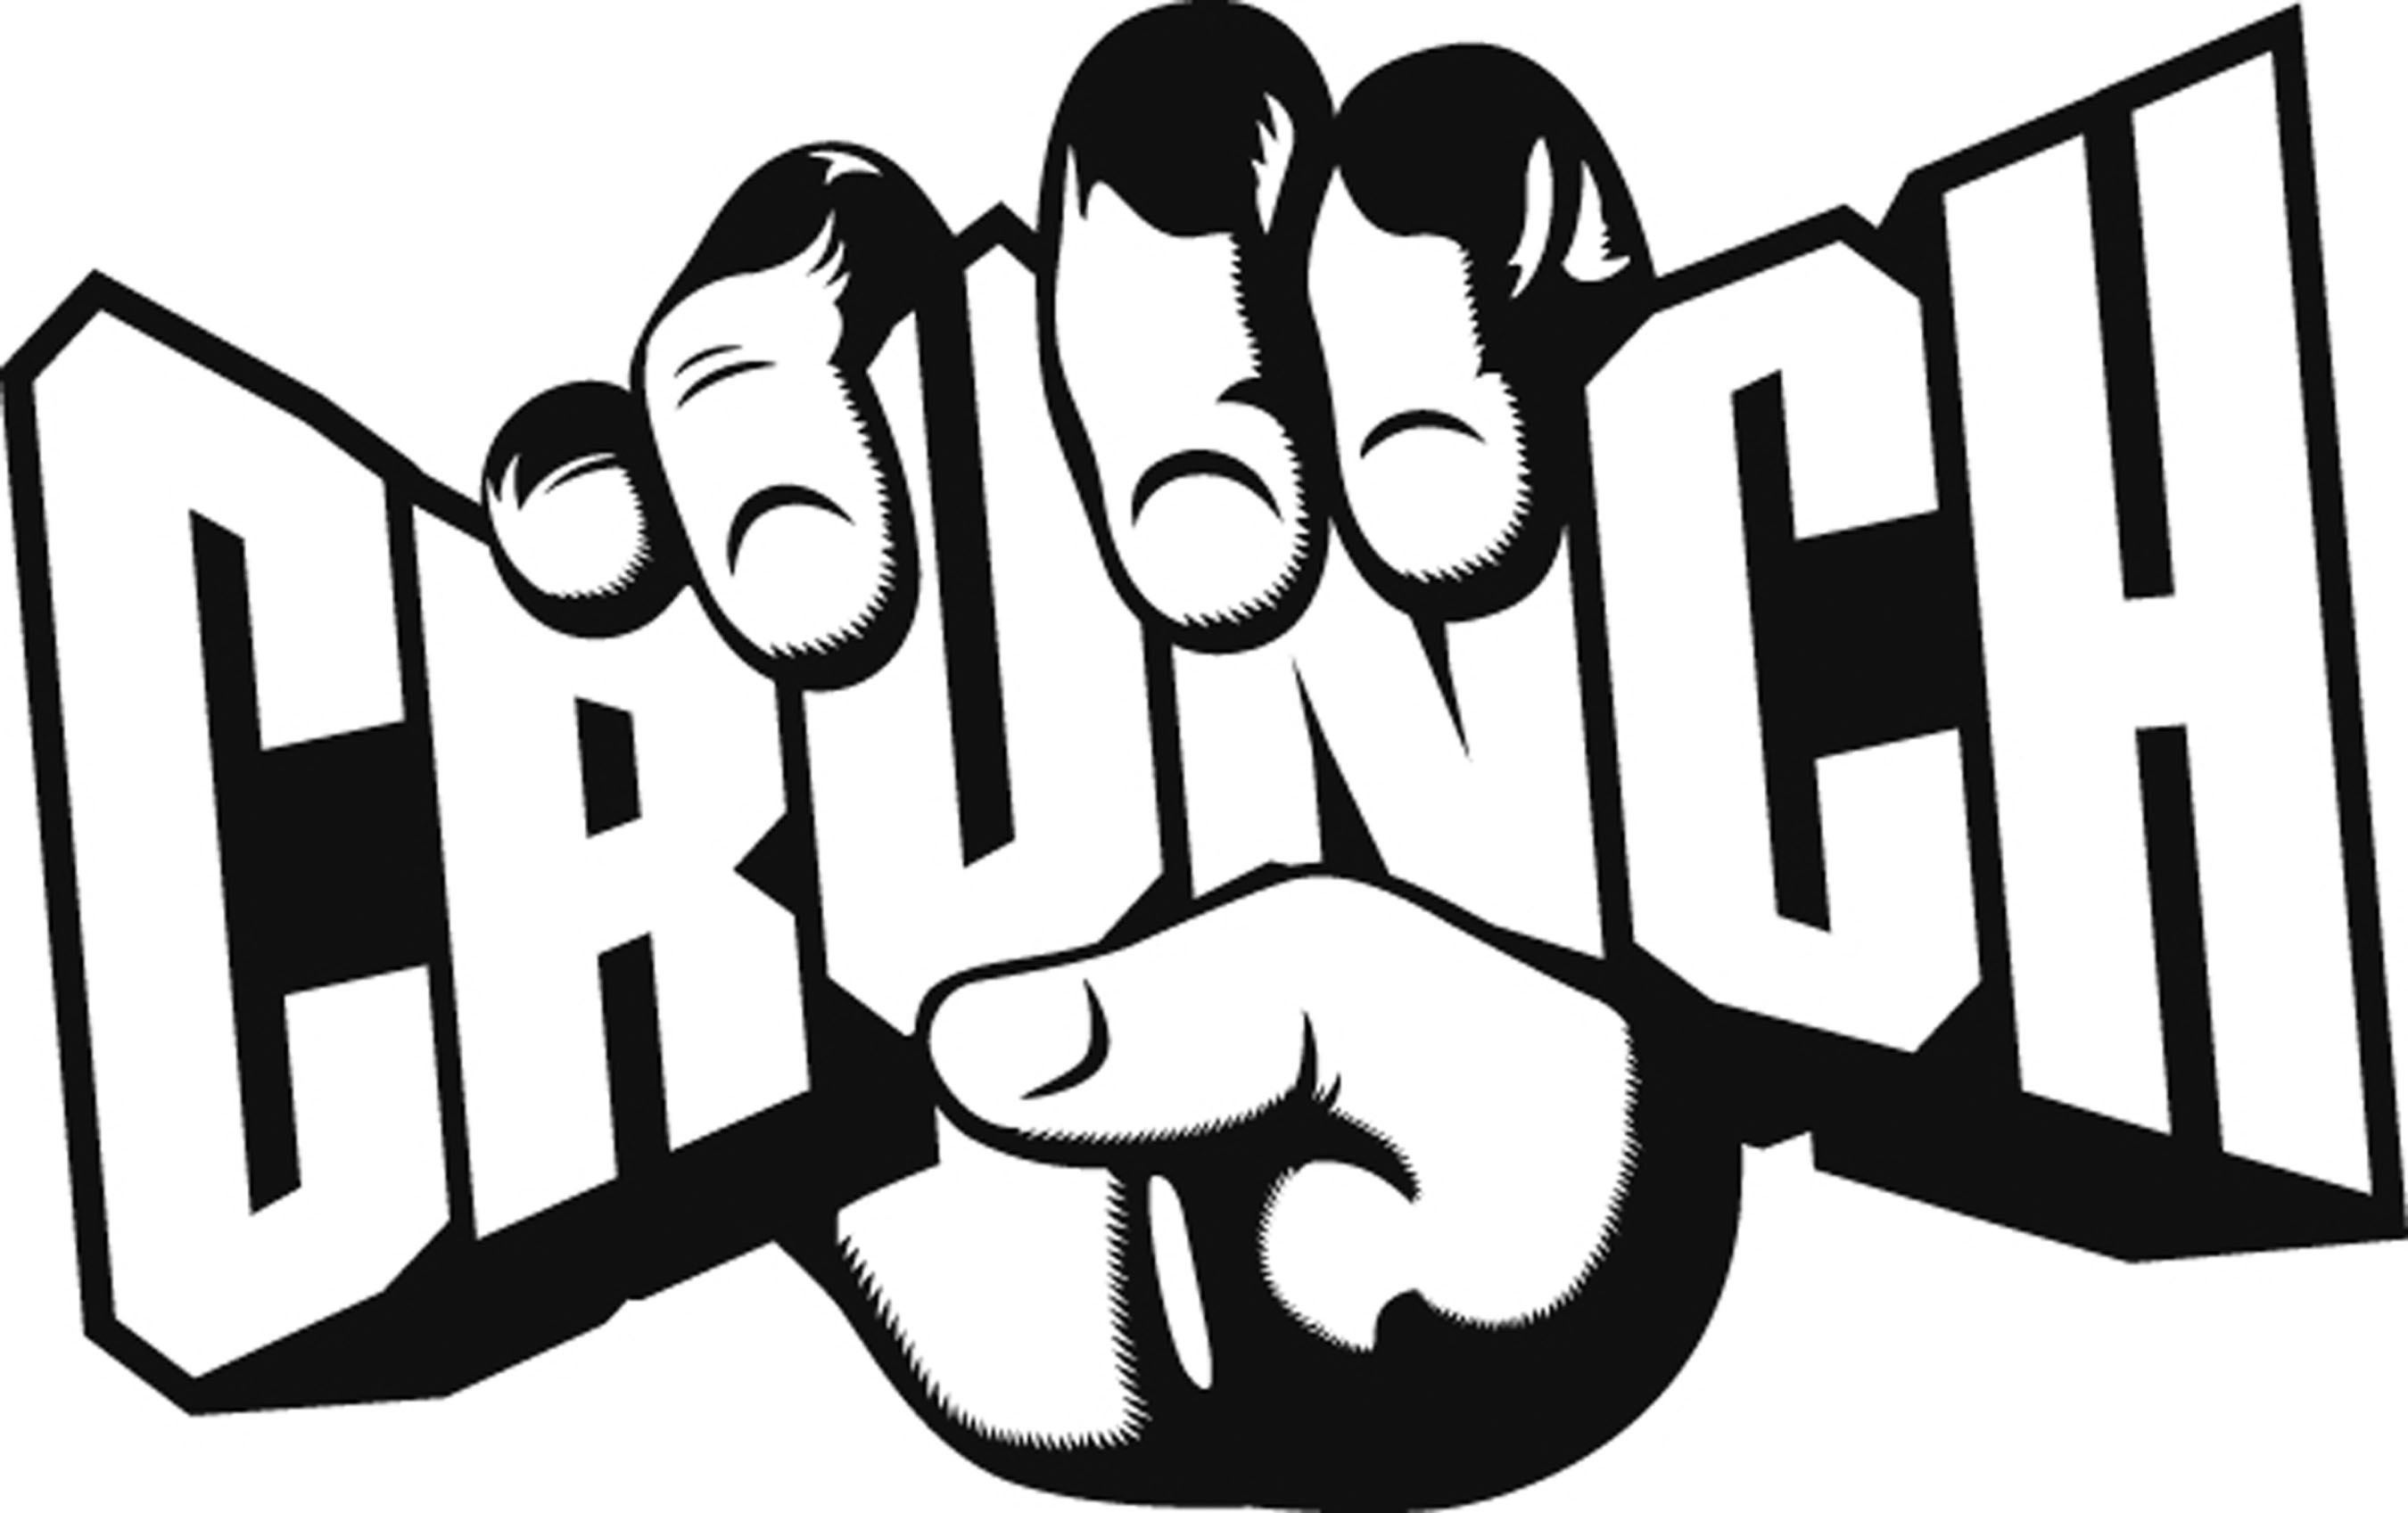 Crunch Fitness Logo. (PRNewsFoto/Crunch Fitness) (PRNewsFoto/)